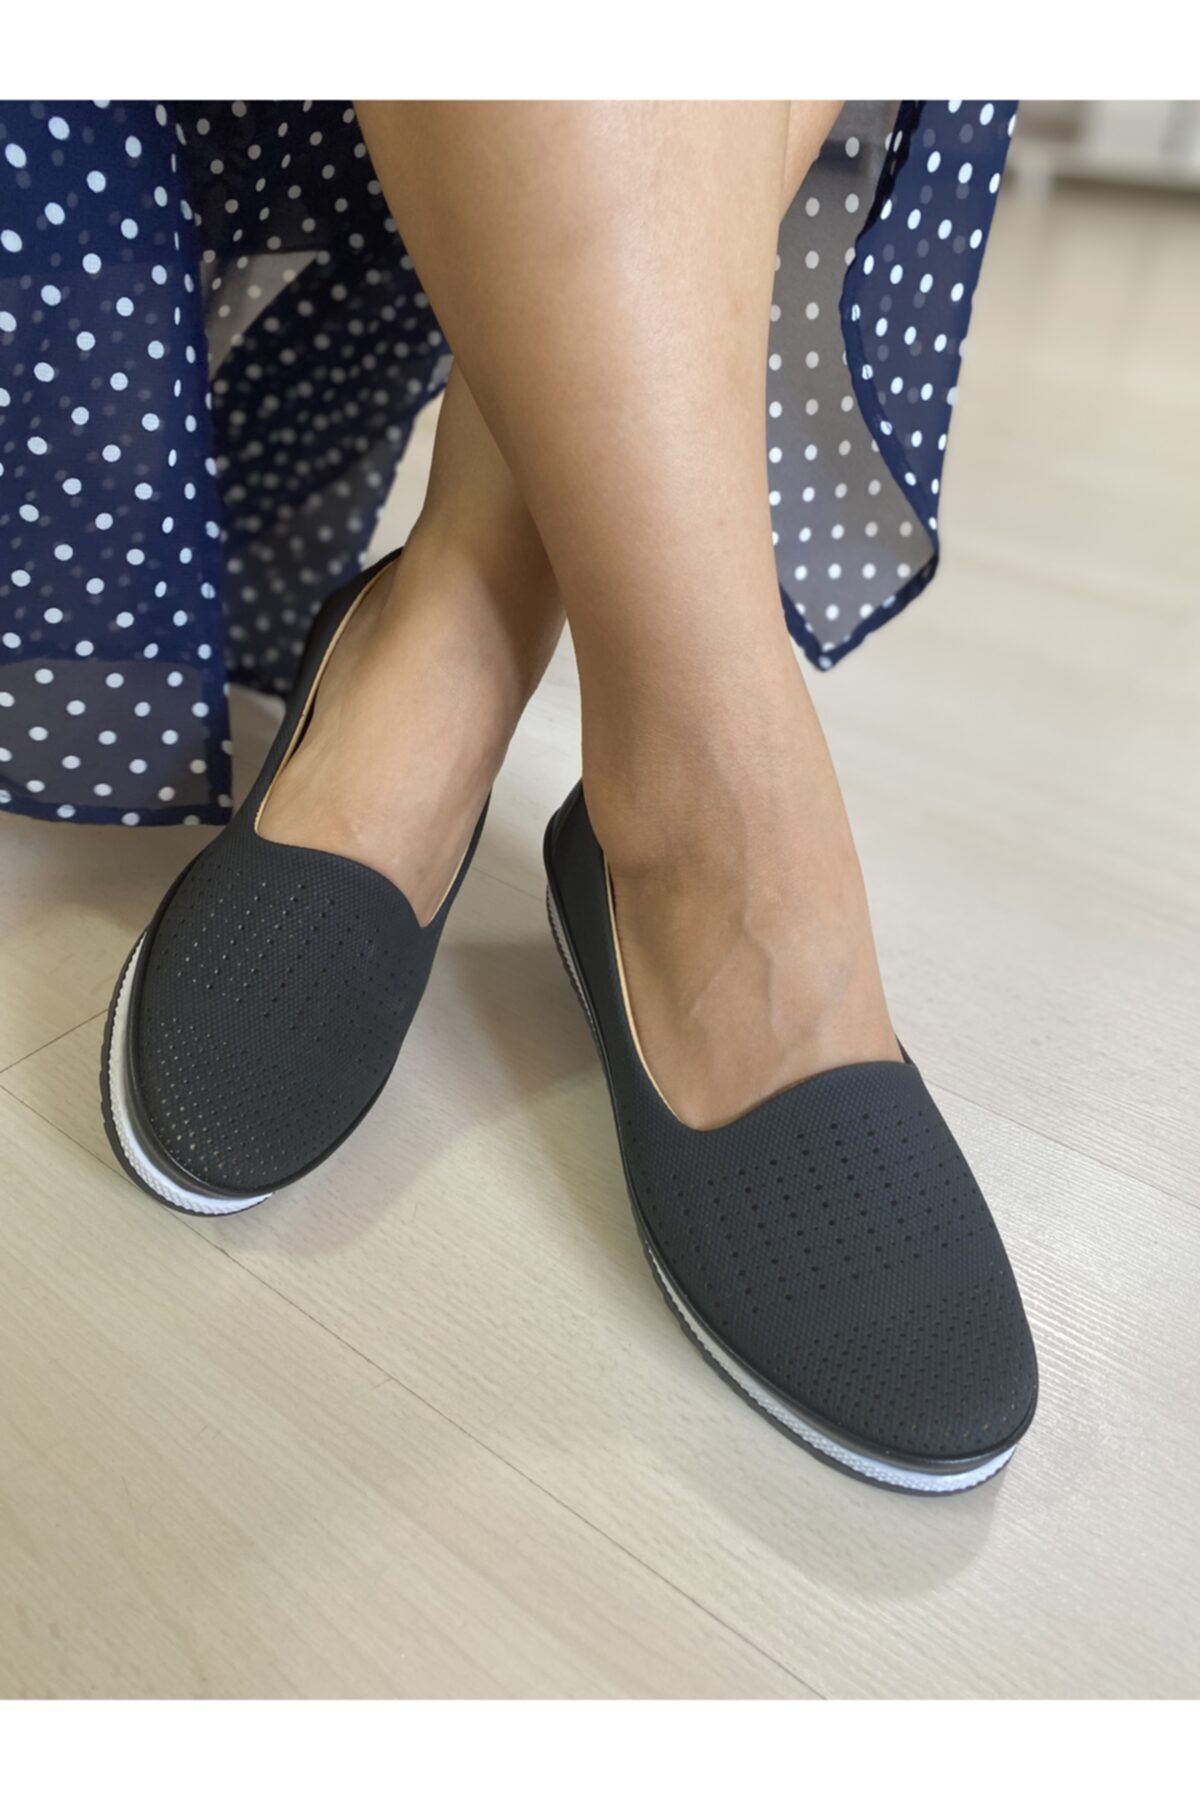 Ayzen Ortopedik Kadın Ayakkabısı Anne Ayakkabısı Varol Kundura